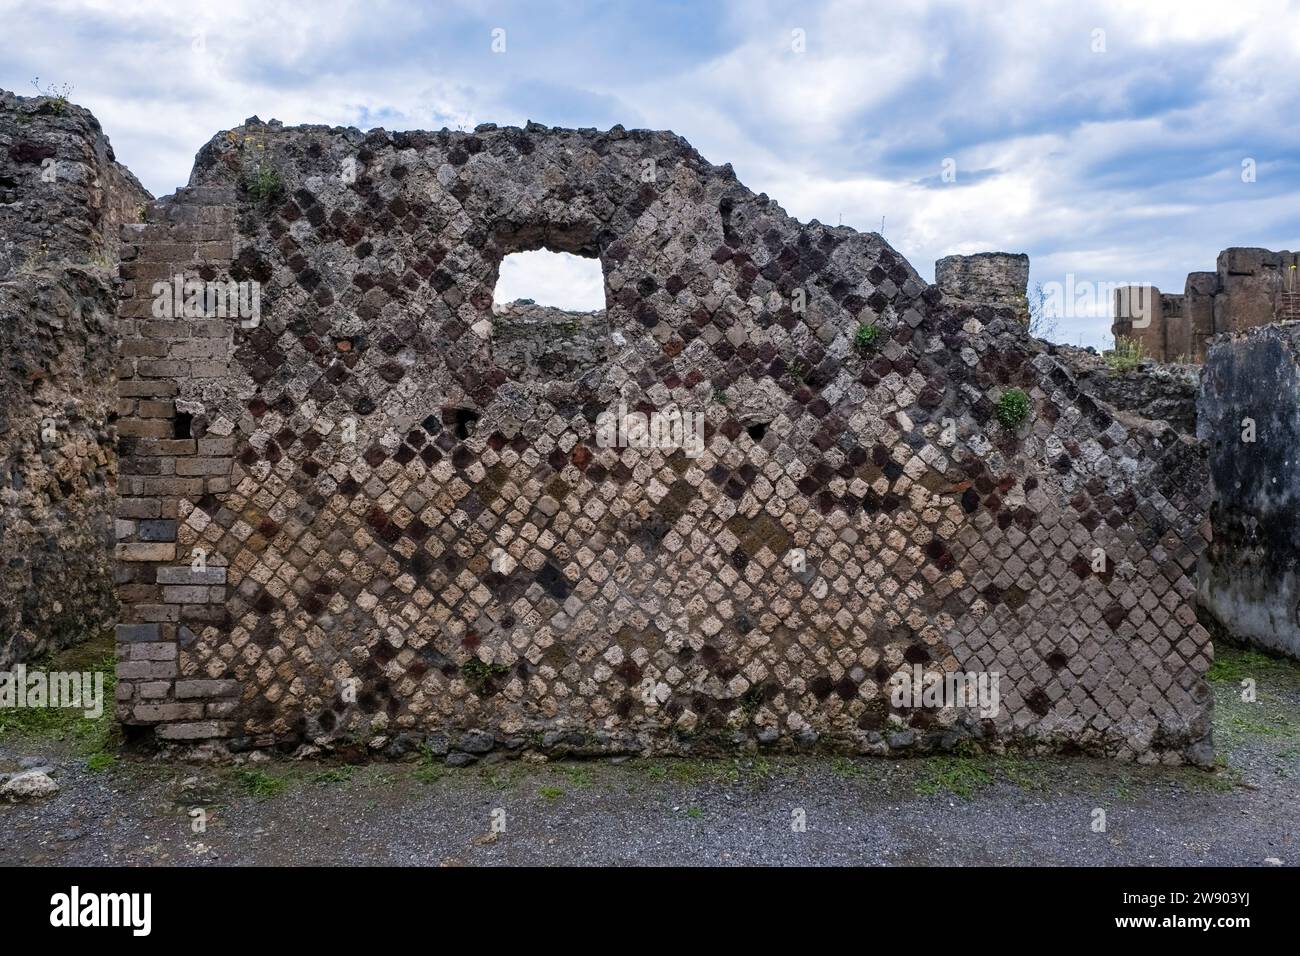 Ruinen in der Via delle Terme in der archäologischen Stätte von Pompeji, einer antiken Stadt, die durch den Ausbruch des Vesuv im Jahr 79 n. Chr. zerstört wurde. Stockfoto